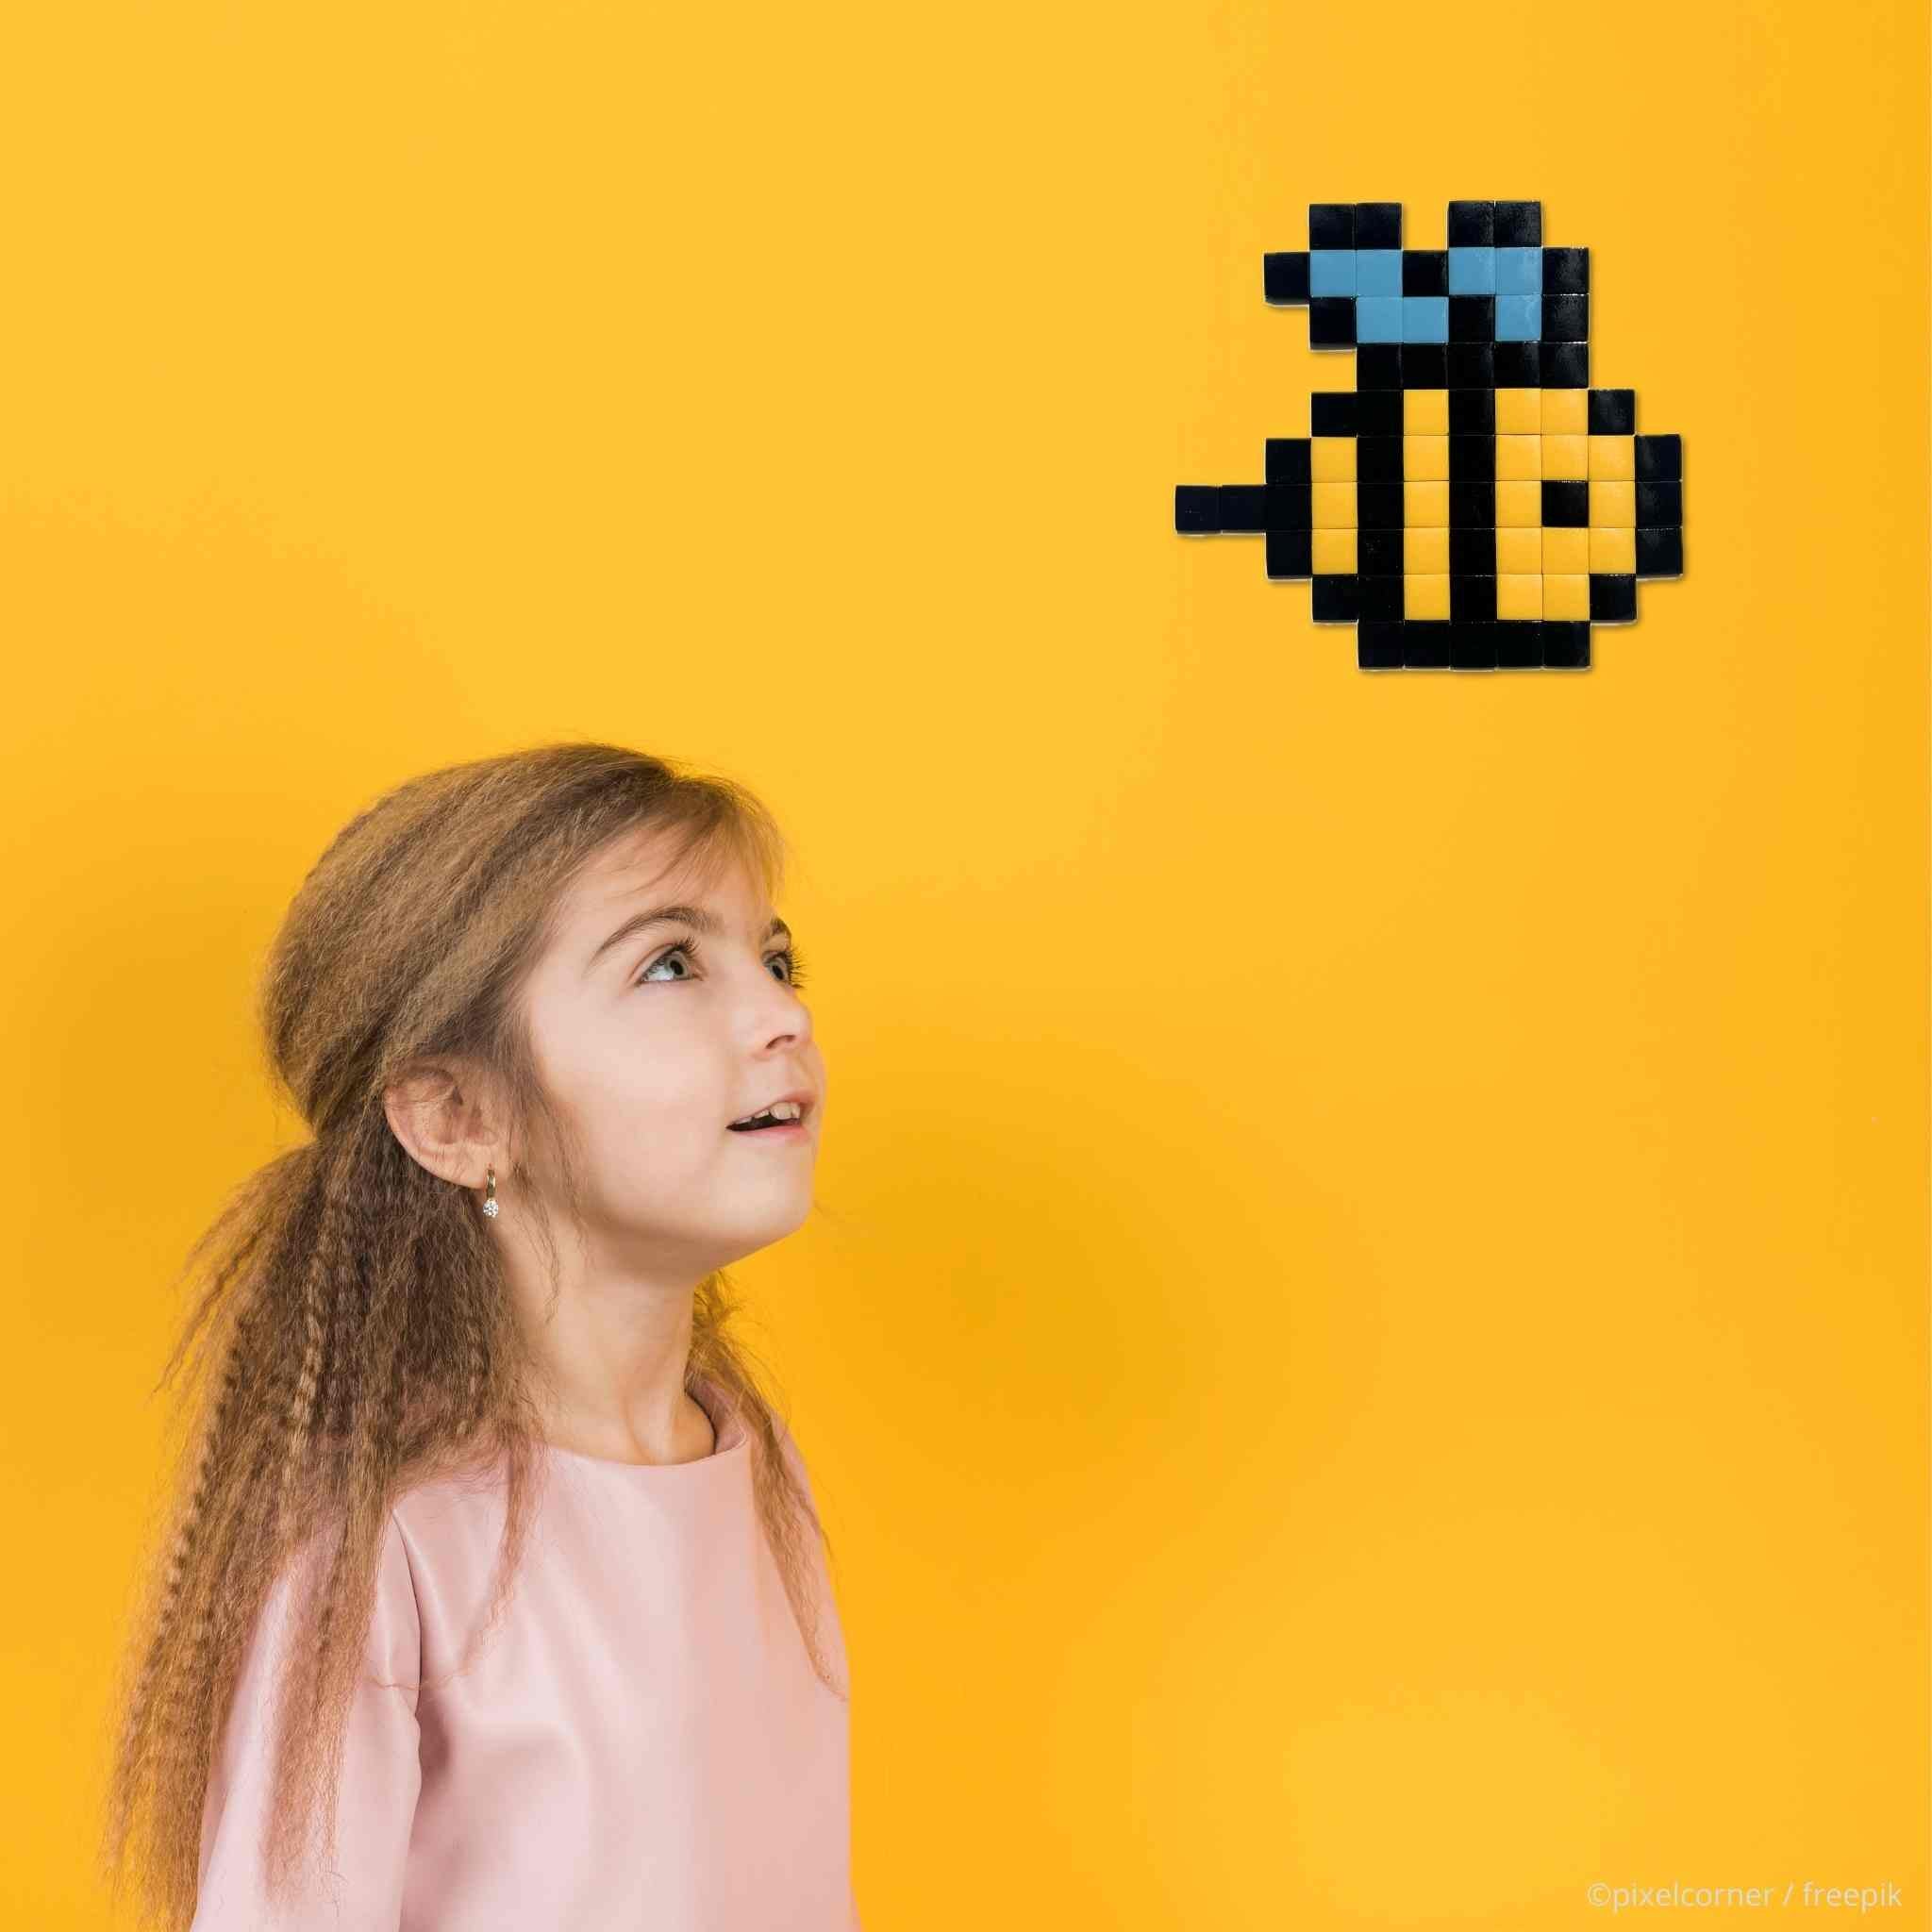 Pixel Art Kit "Save The Bzzz" par Pixel Corner - Kits de loisirs créatifs